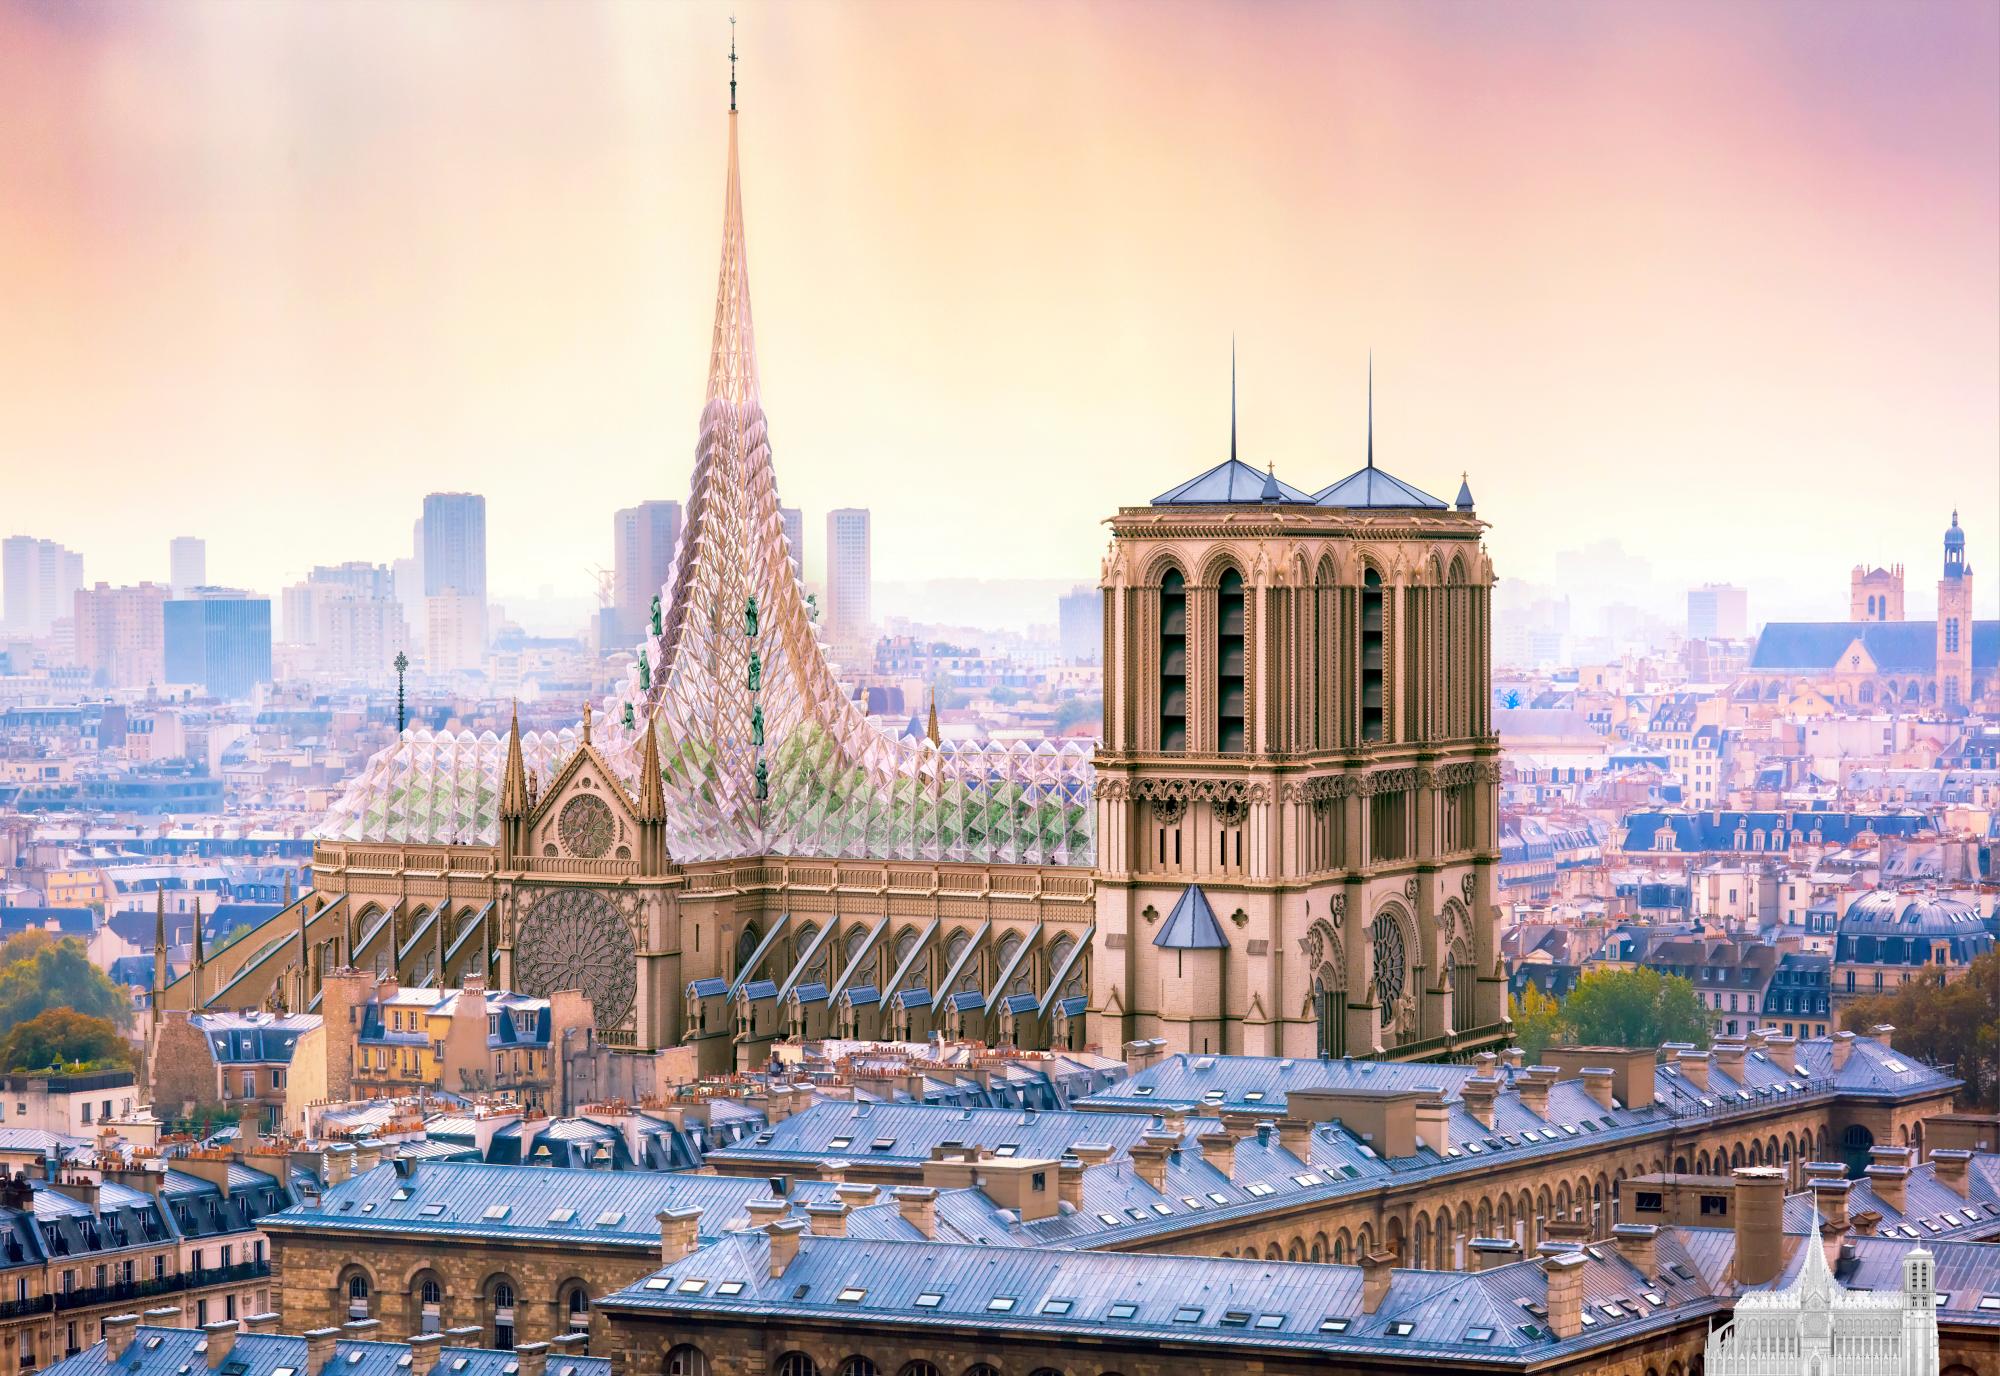 La idea futurista de renovación de Notre Dame tras el incendio de 2019.